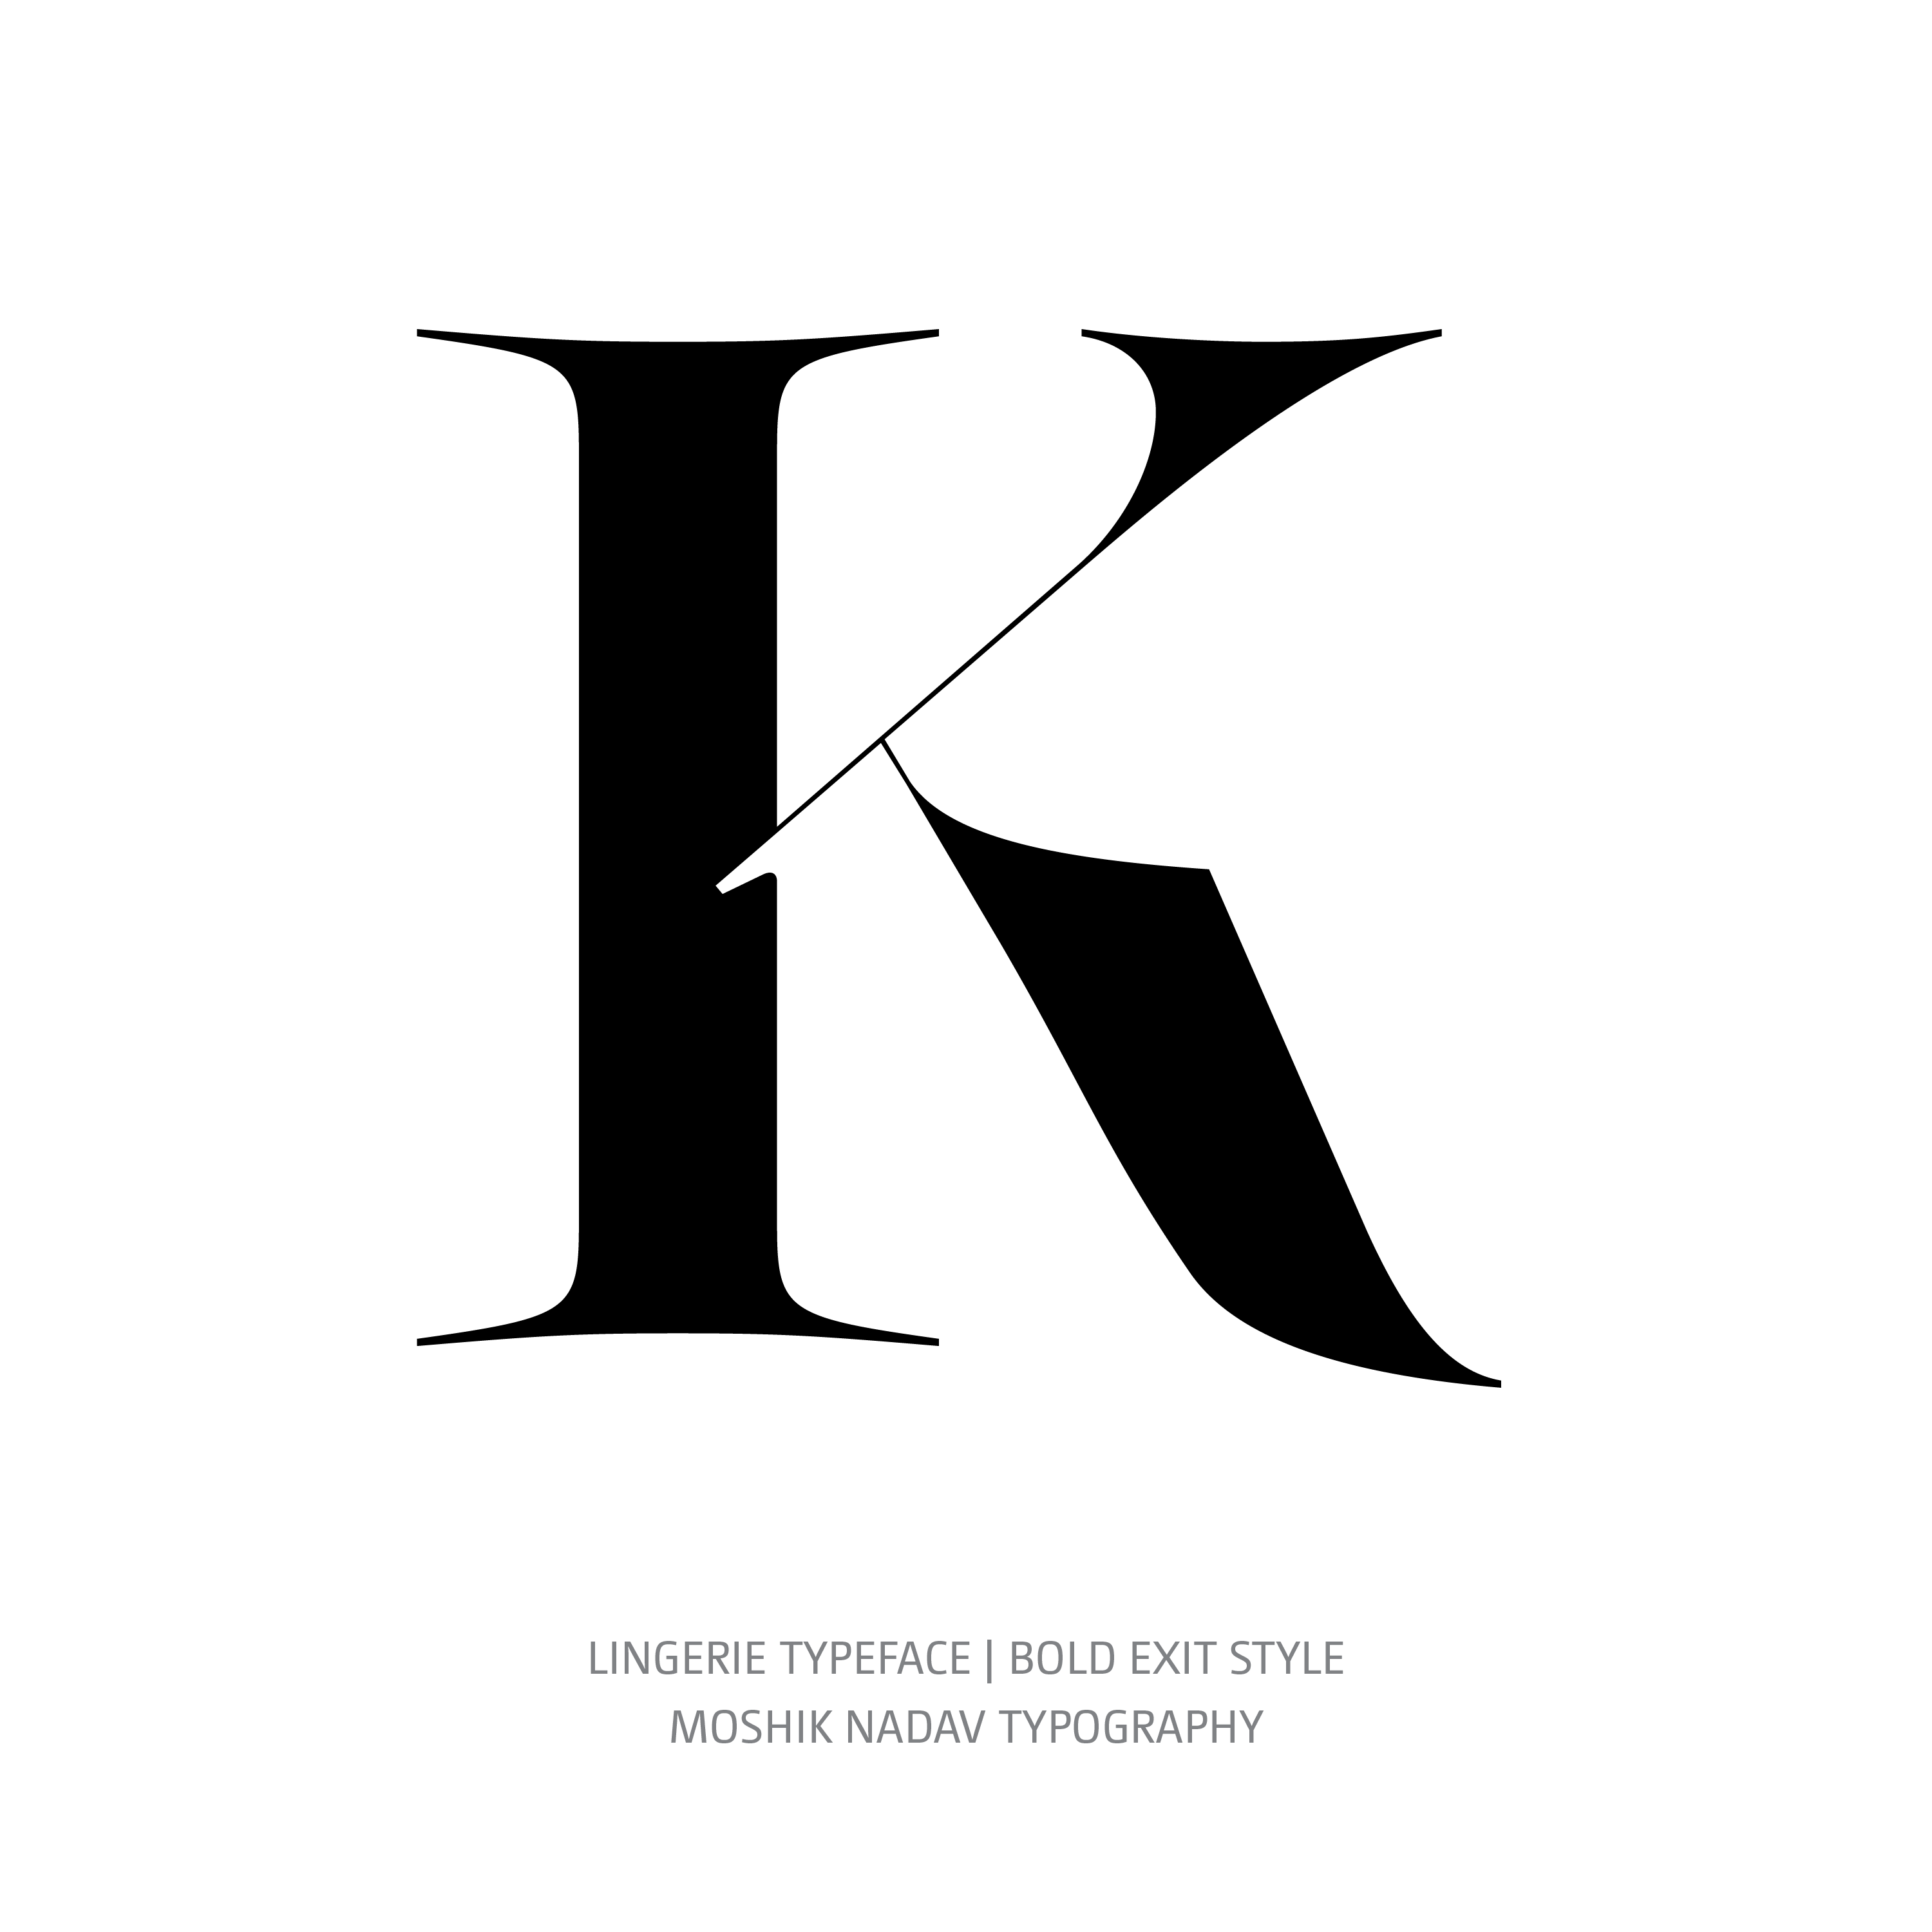 Lingerie Typeface Bold Exit K